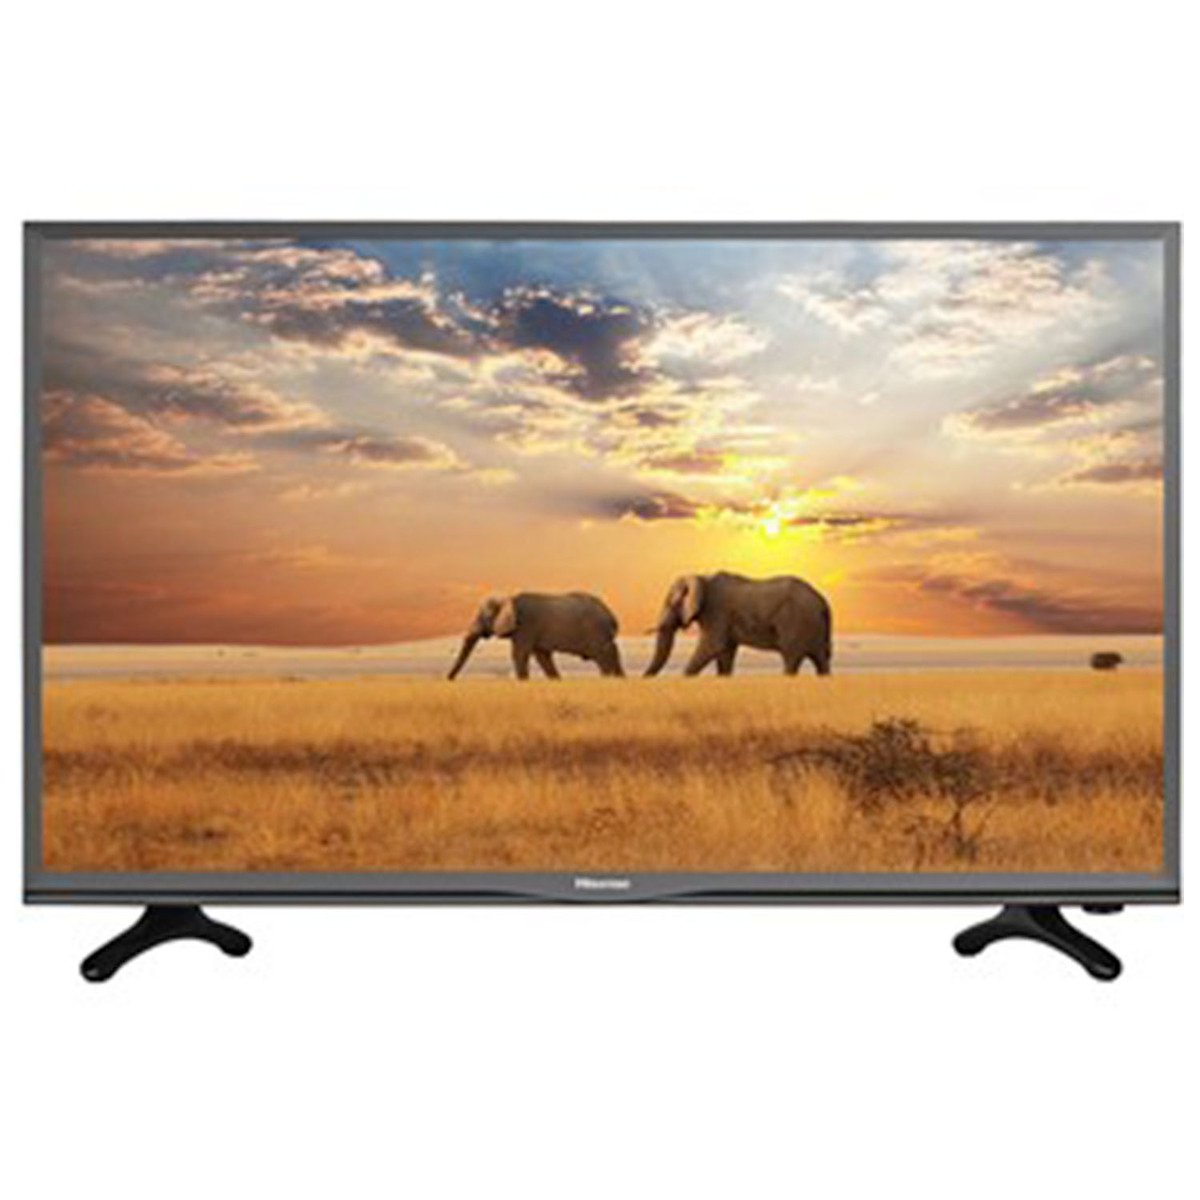 Hisense Full HD Smart LED TV 49A5700PW 49inch